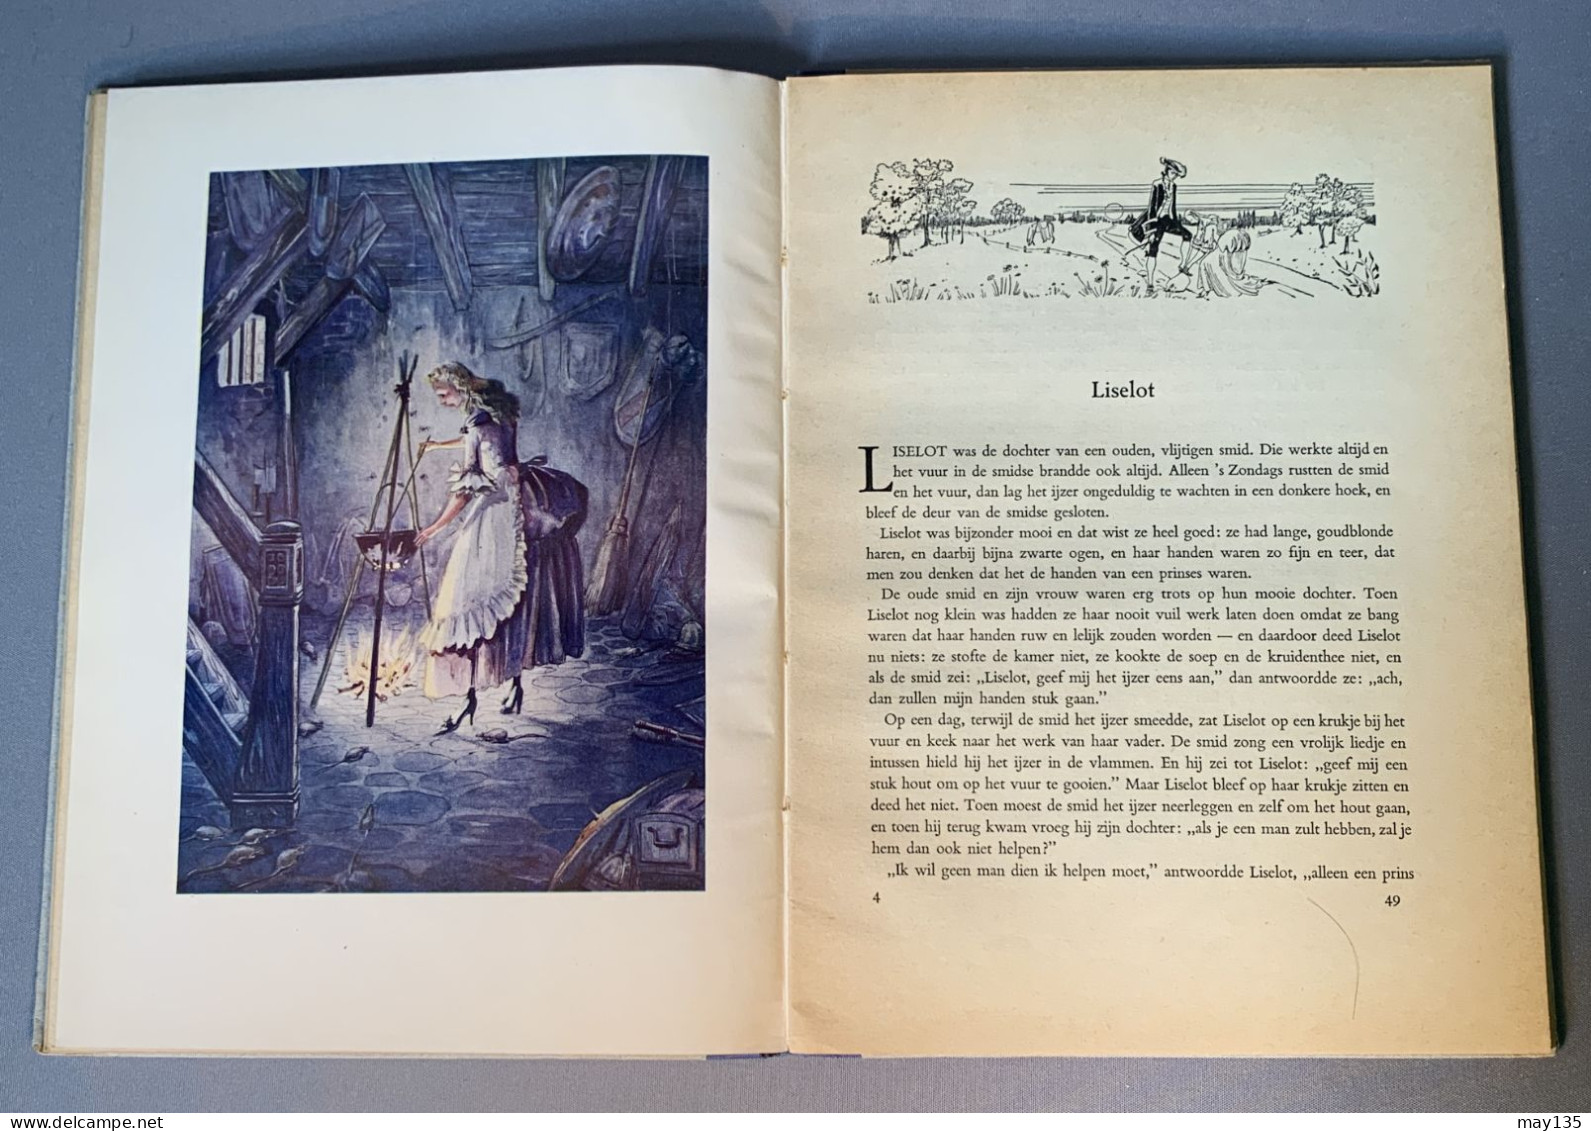 anno 1946 - Sprookjes door Frederieke Laagland - 19 sprookjes met illustraties